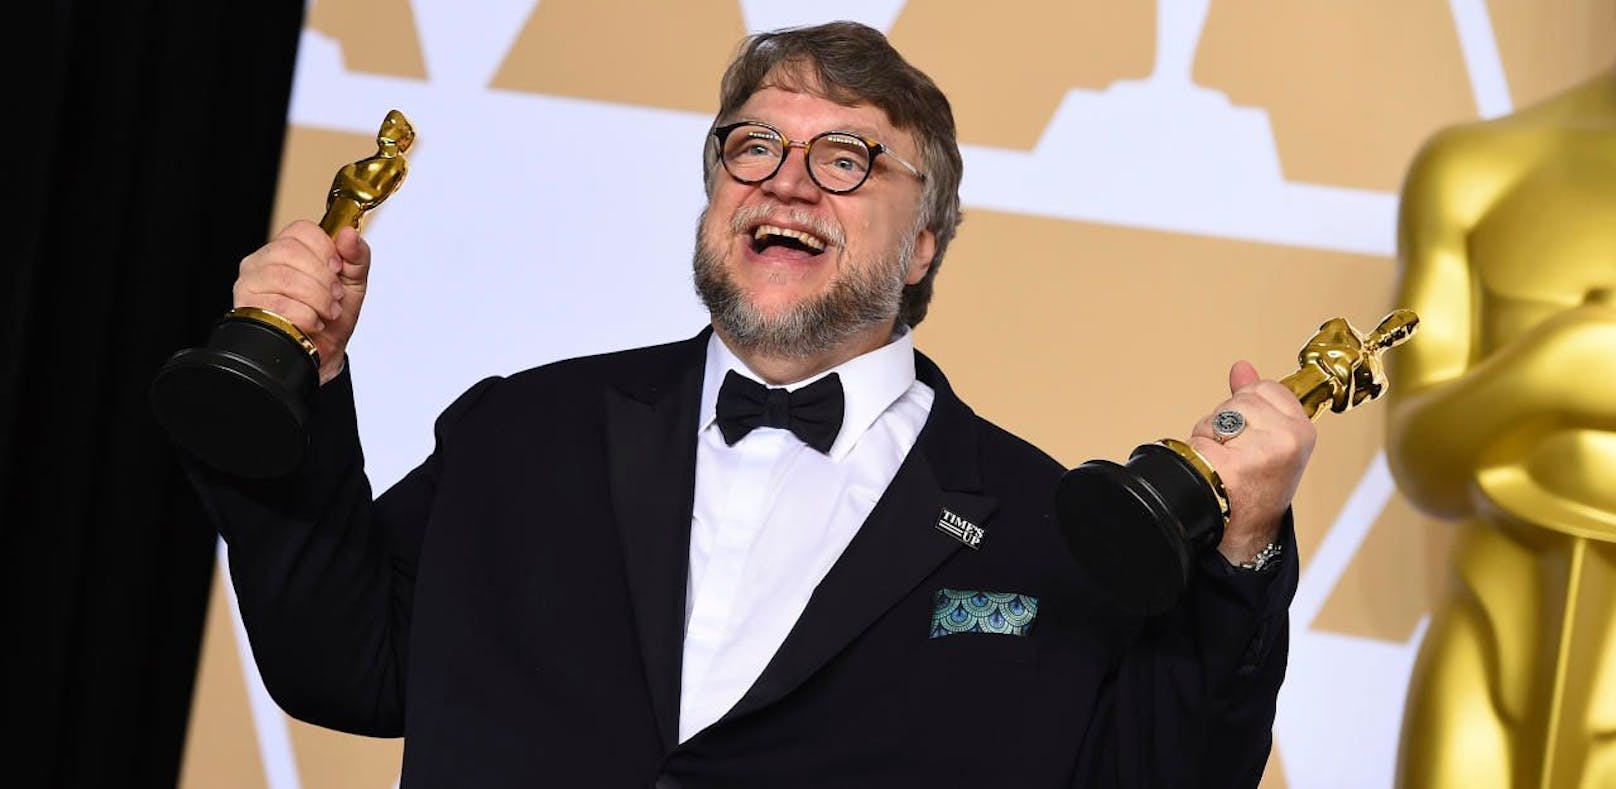 17 Drehbücher von del Toro warten auf ihre Verfilmung